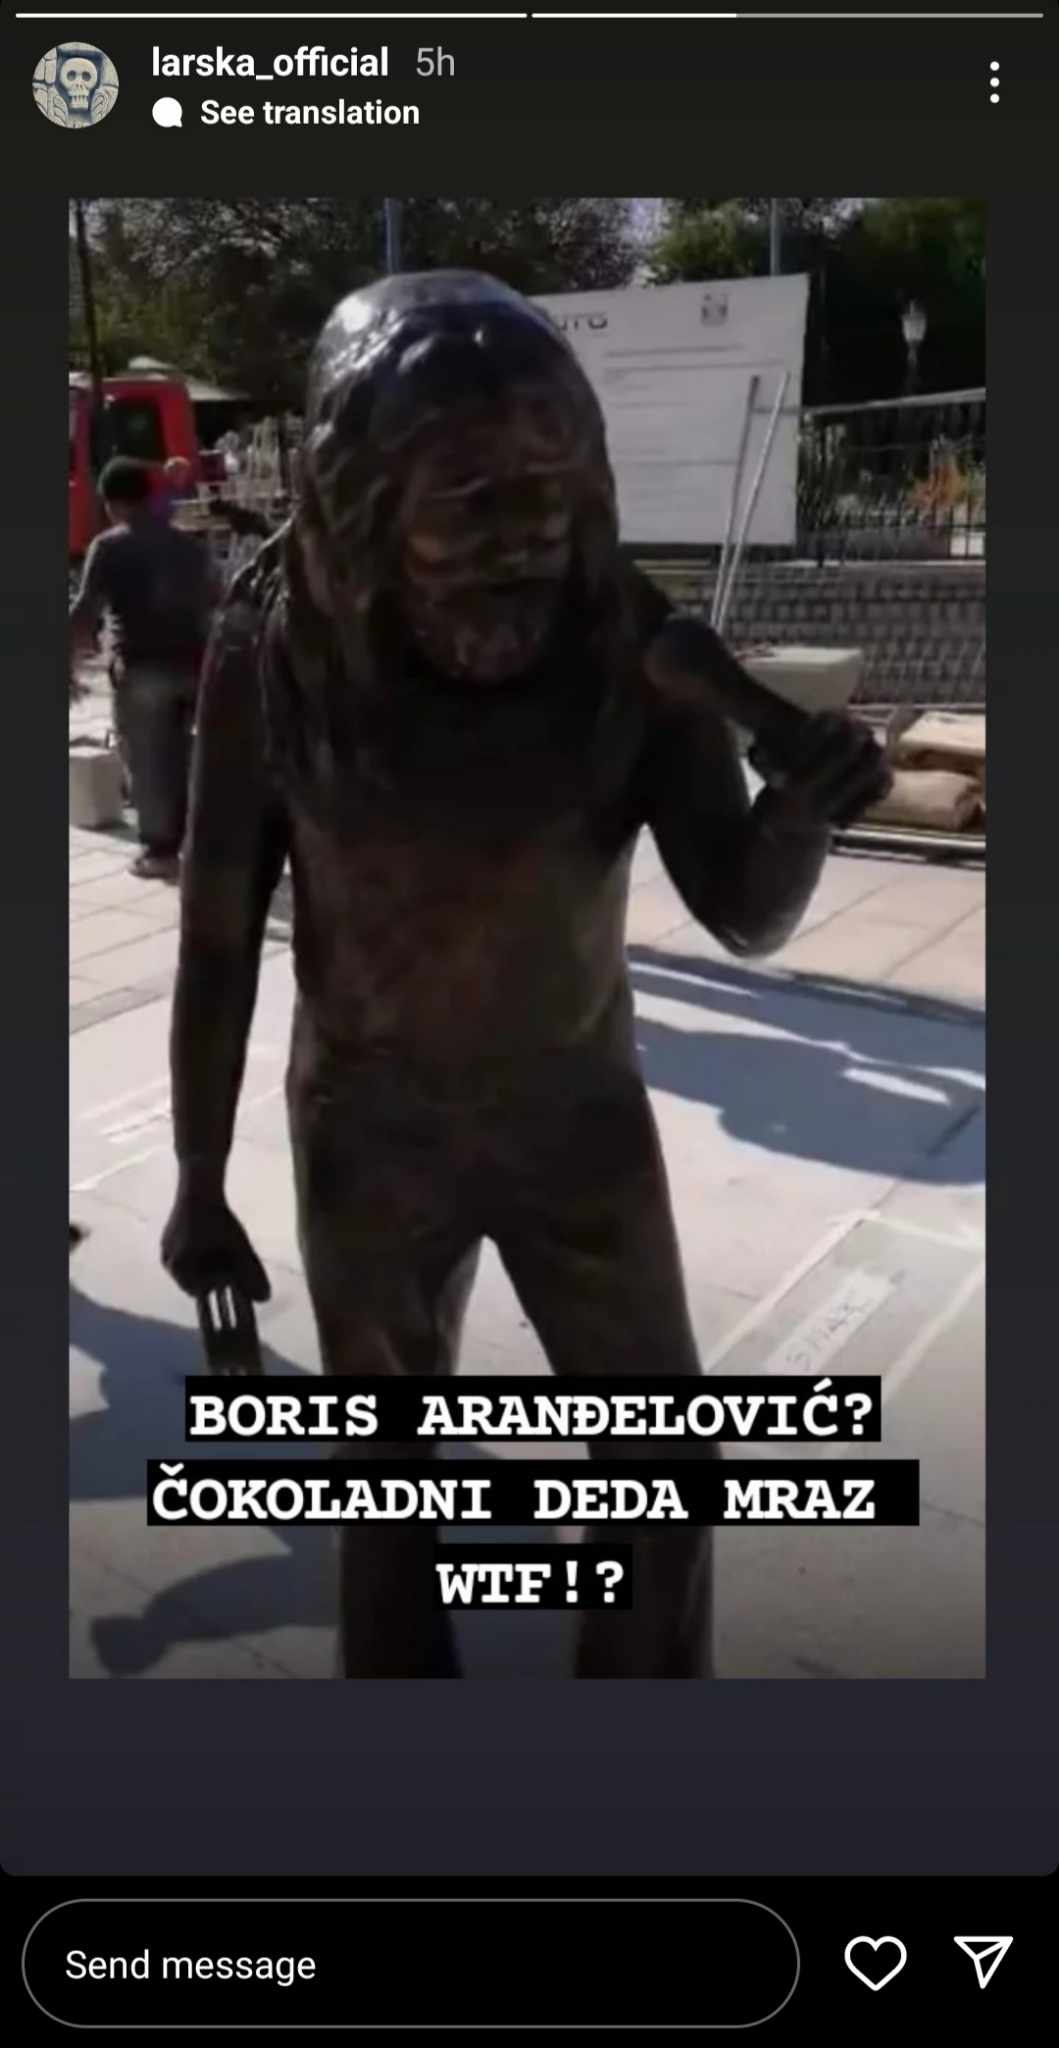 Kragujevac je podigao spomenik grupi Smak, ali ljudi nisu srećni: "Boris Aranđelović je kao čokoladni Deda Mraz"